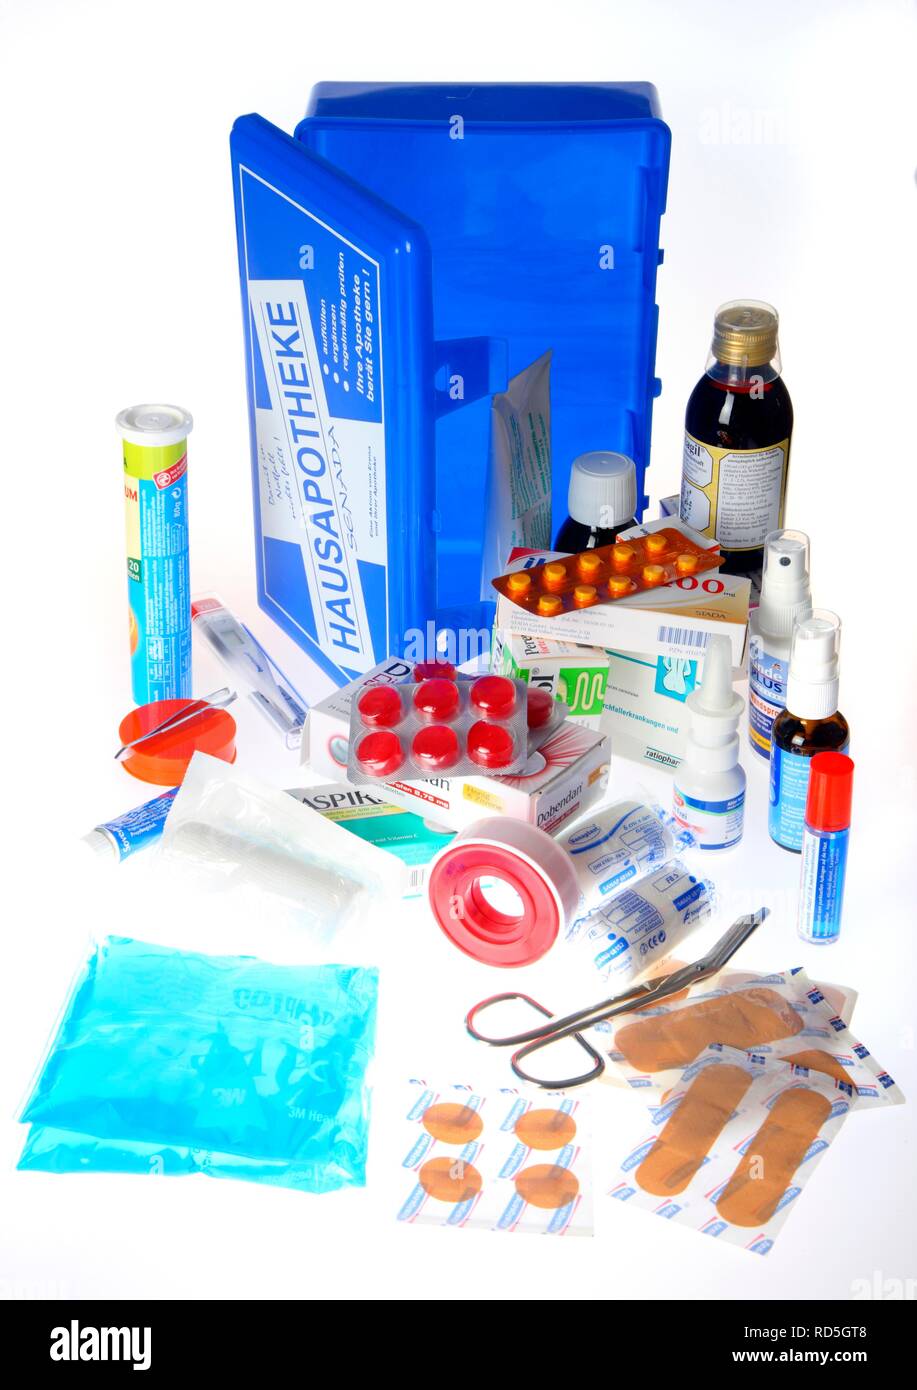 Accueil armoire à médicaments avec une sélection de médicaments et pansements Banque D'Images